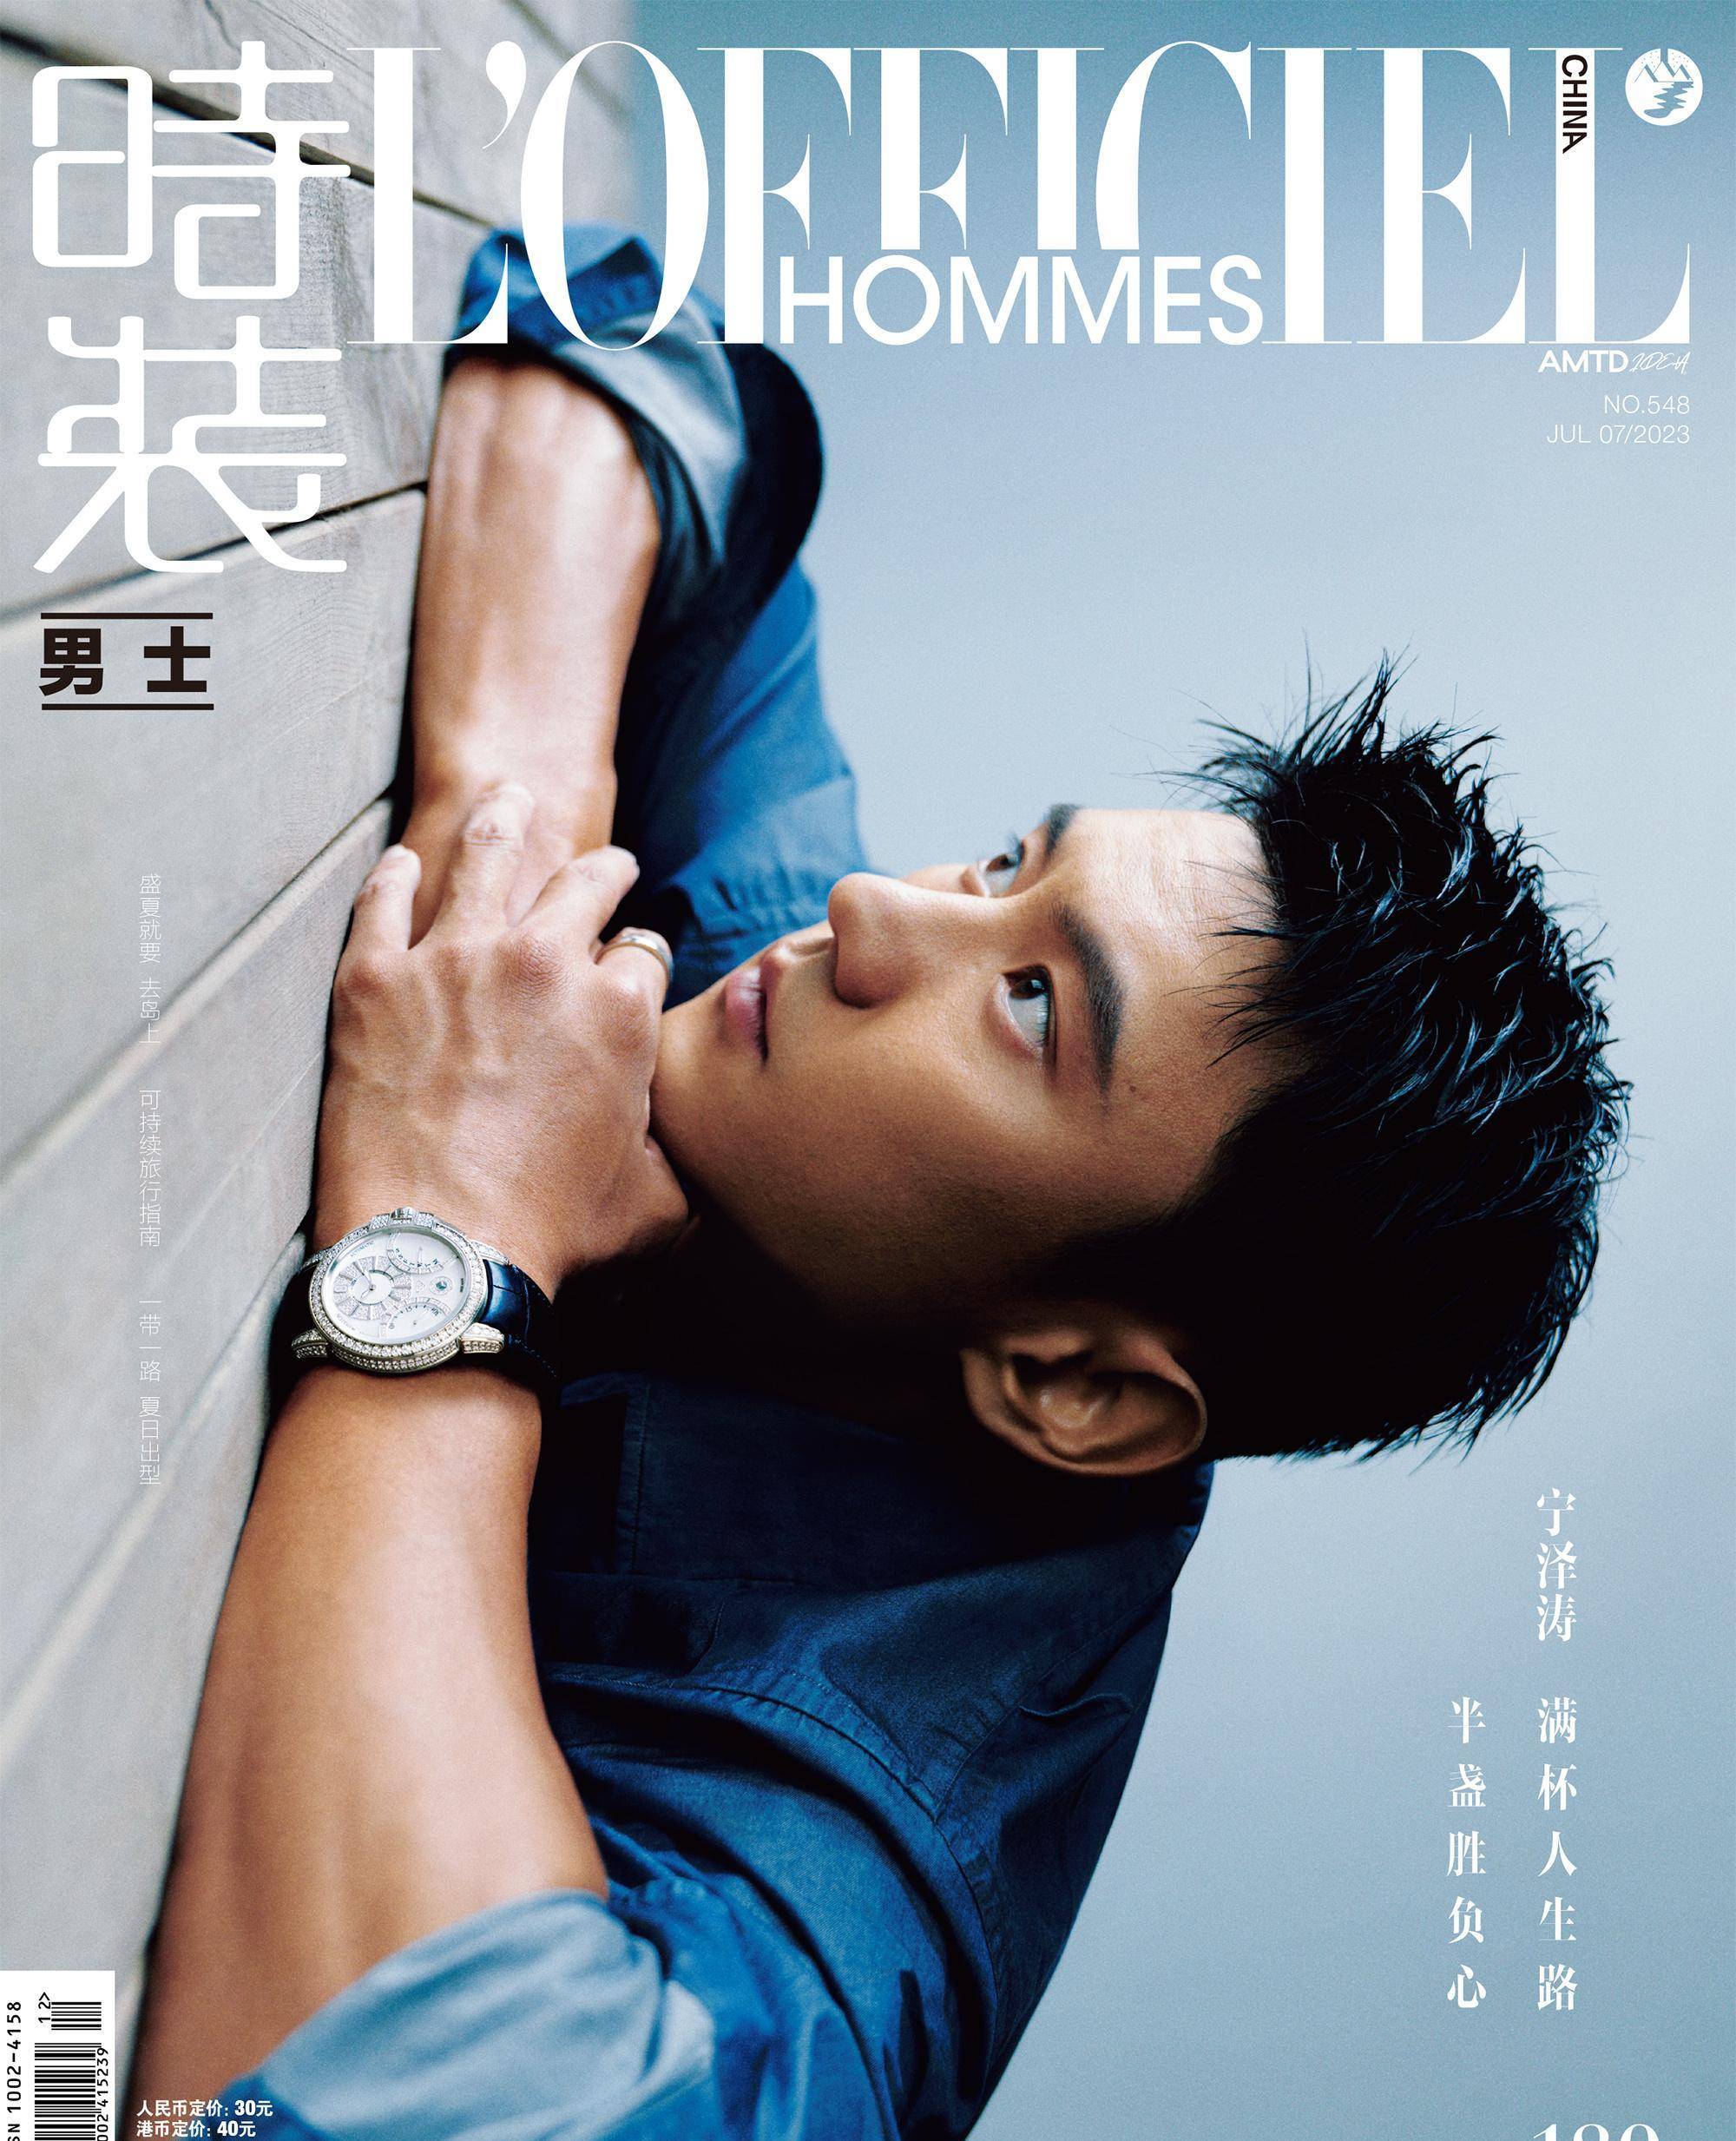 30岁的宁泽涛首次登上《《时装男士》》封面,无衣上身秀肌肉荷尔蒙爆